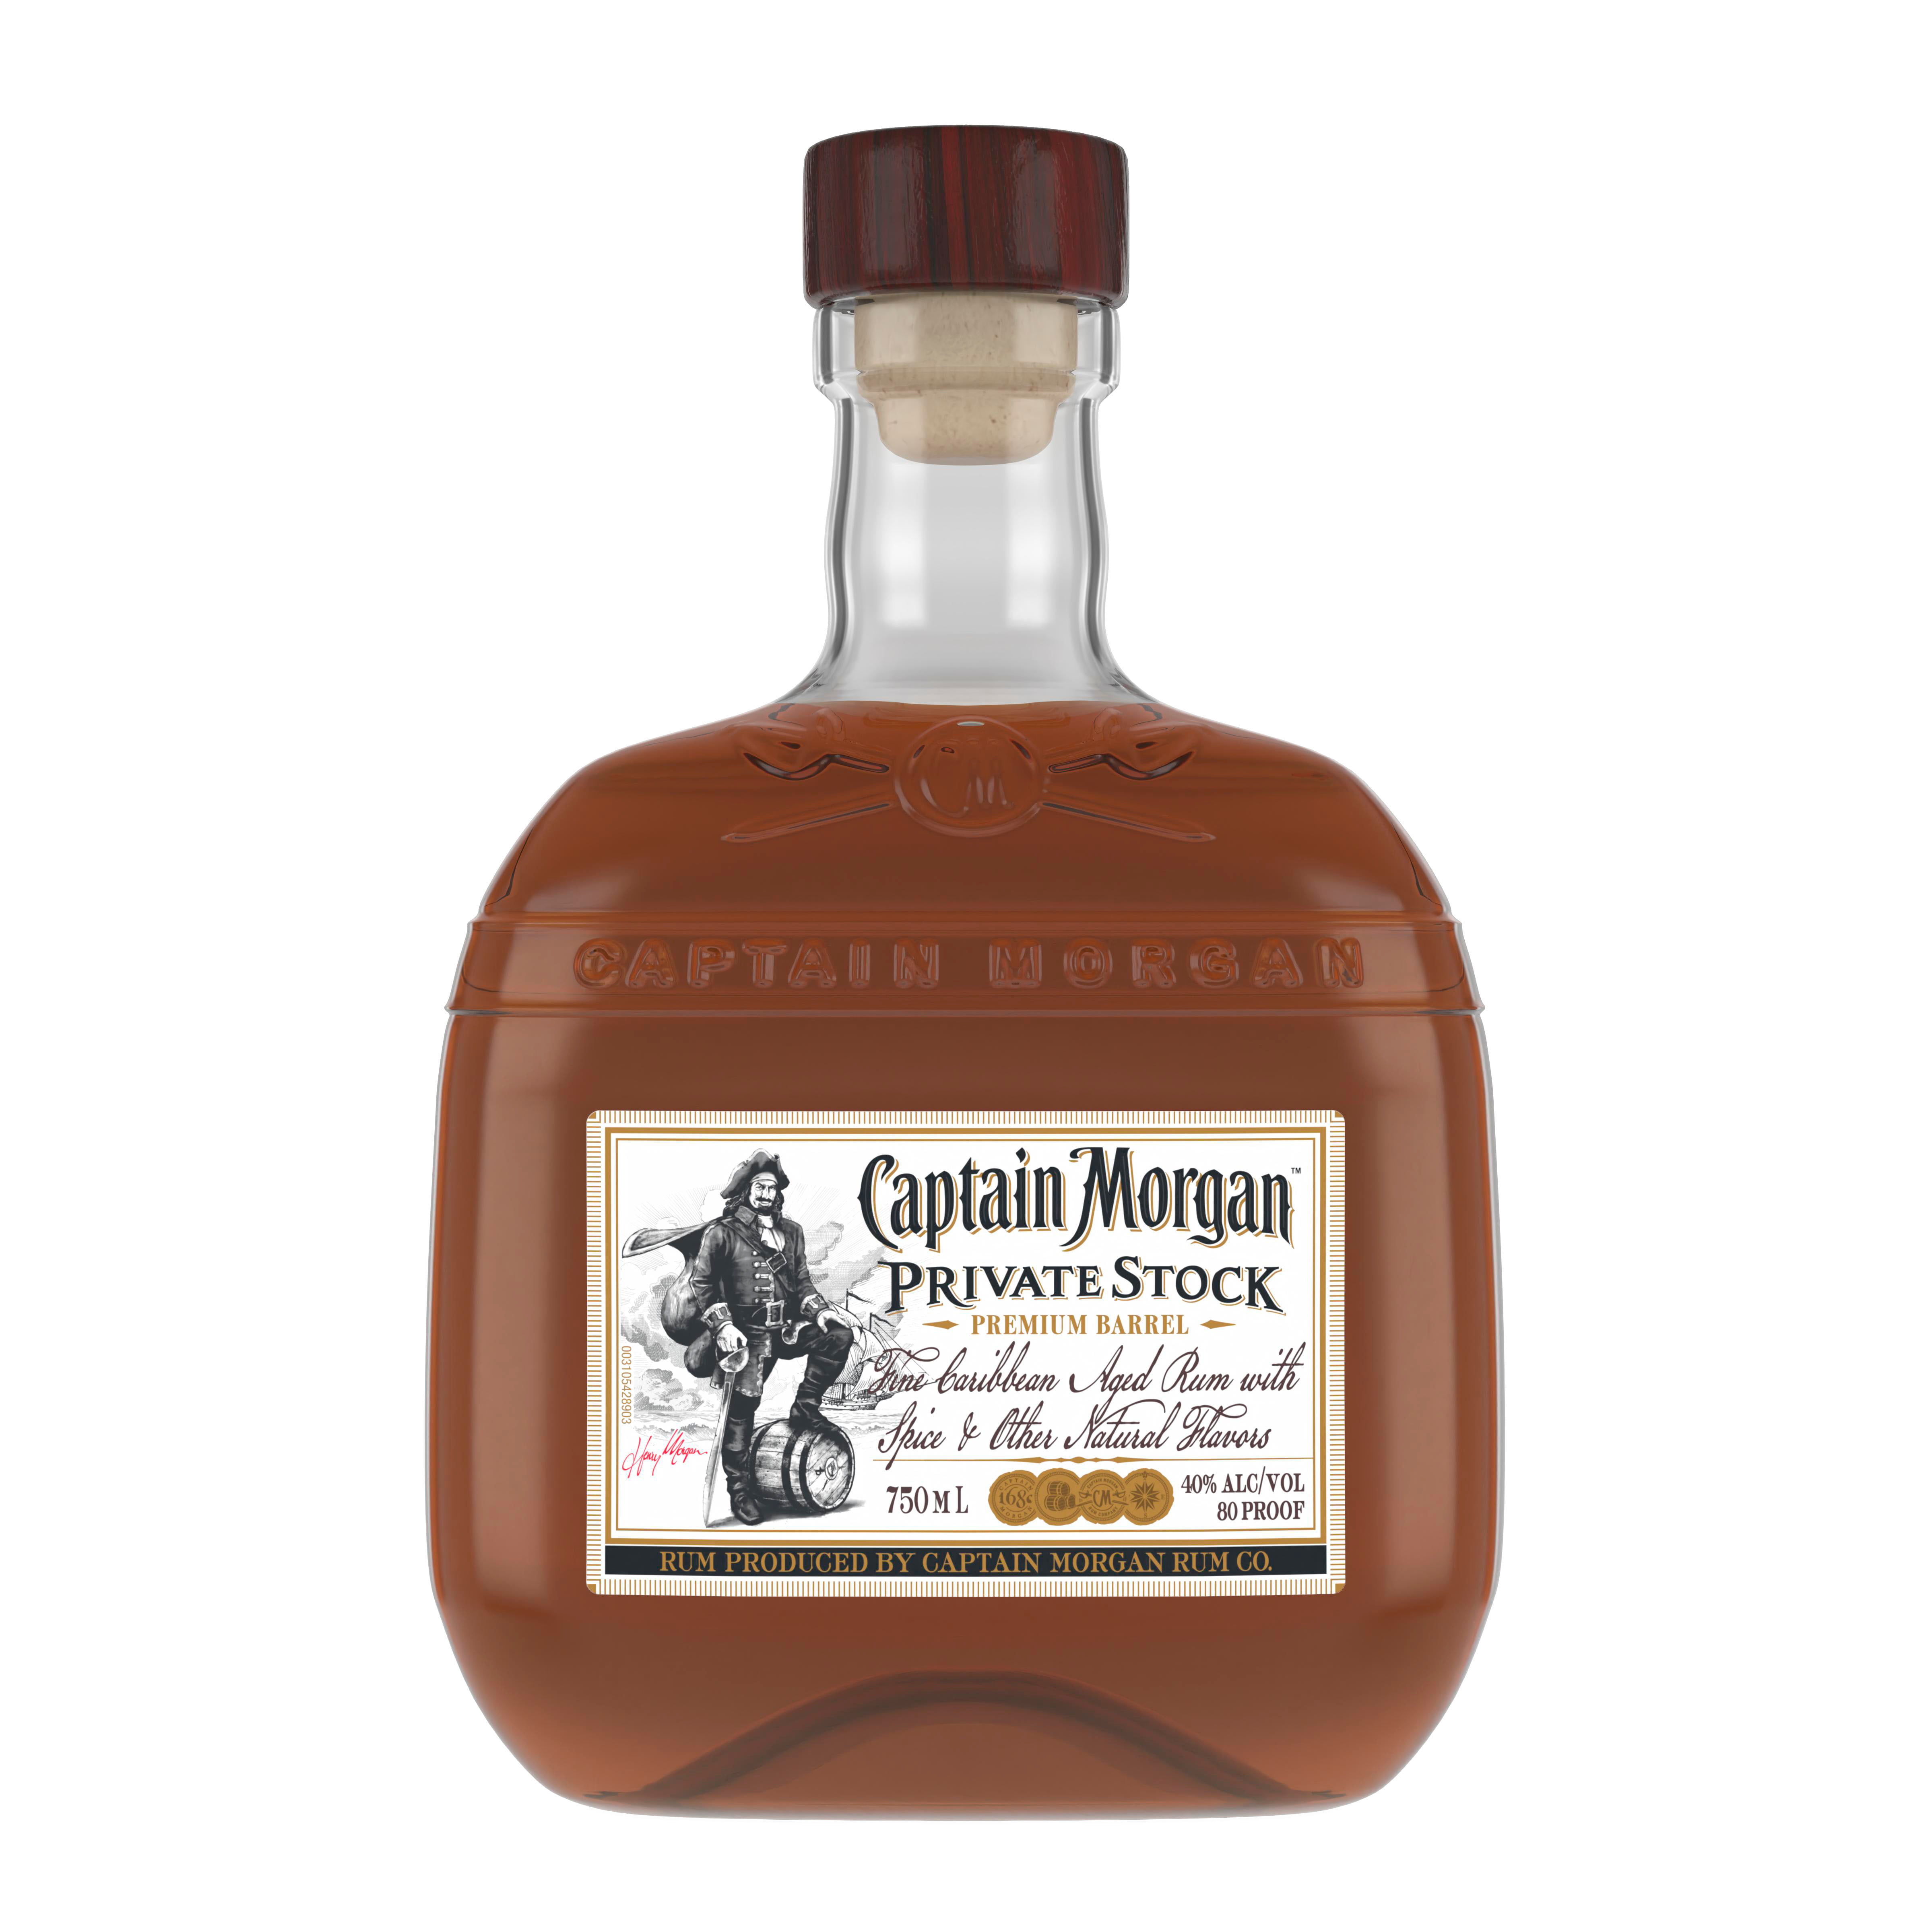 How much is a handle of captain morgan at walmart Captain Morgan Private Stock Rum 750 Ml Walmart Com Walmart Com